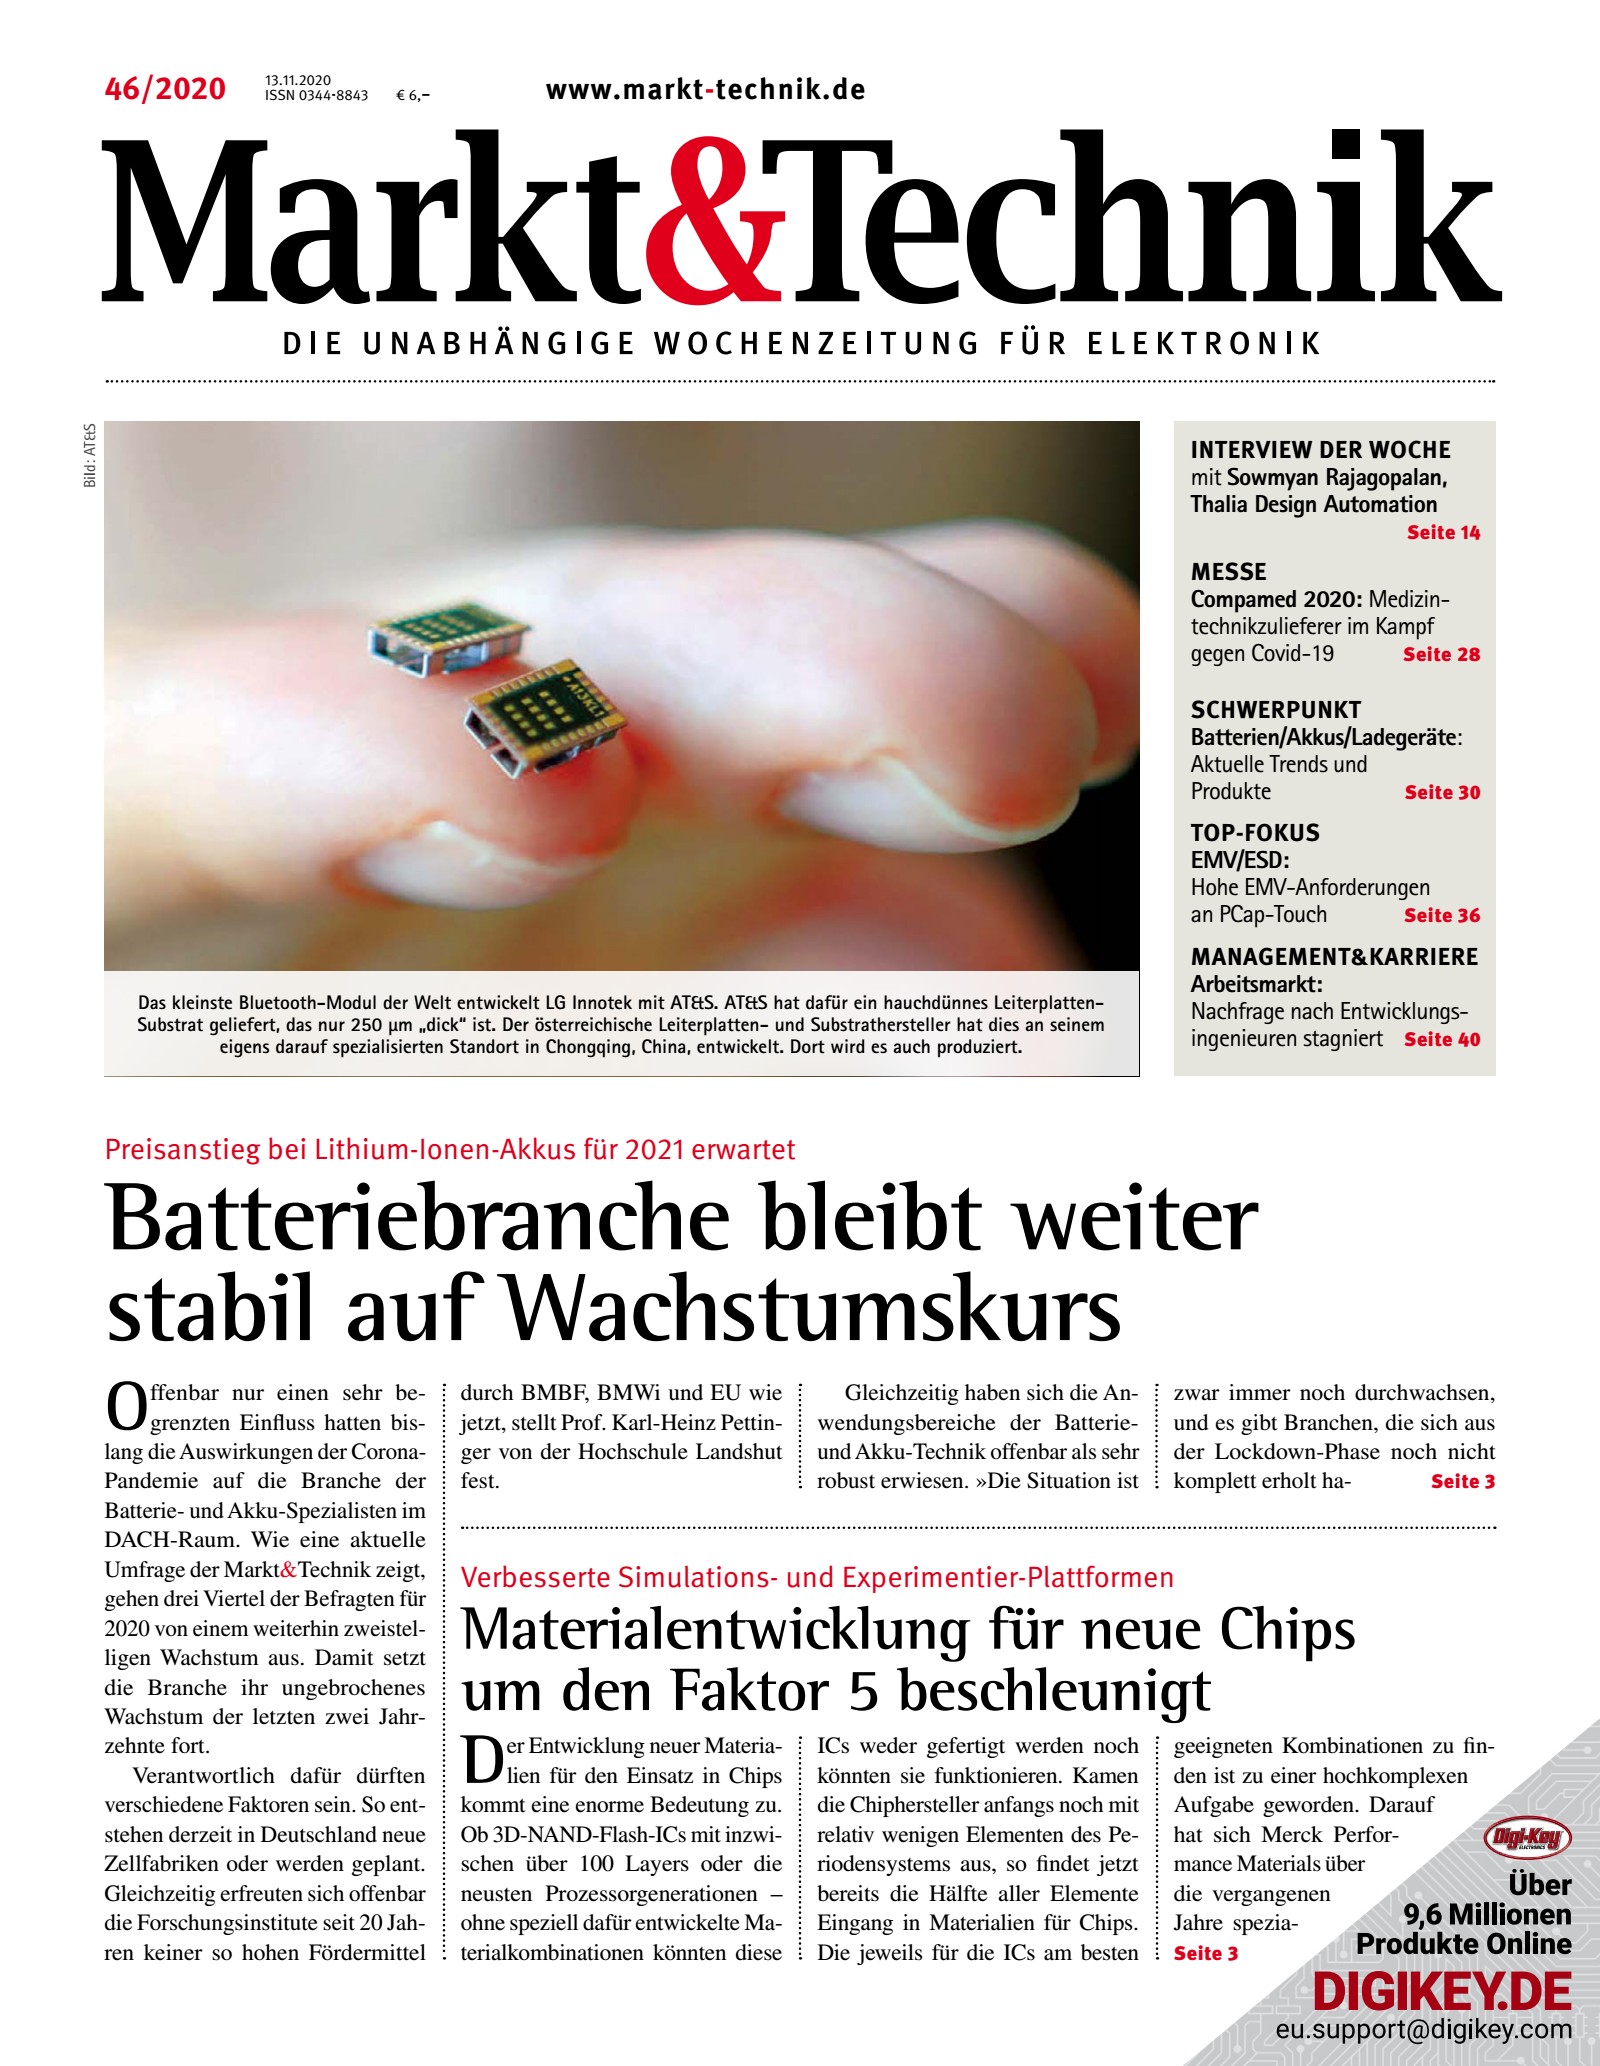 Markt&Technik 46/2020 Digital